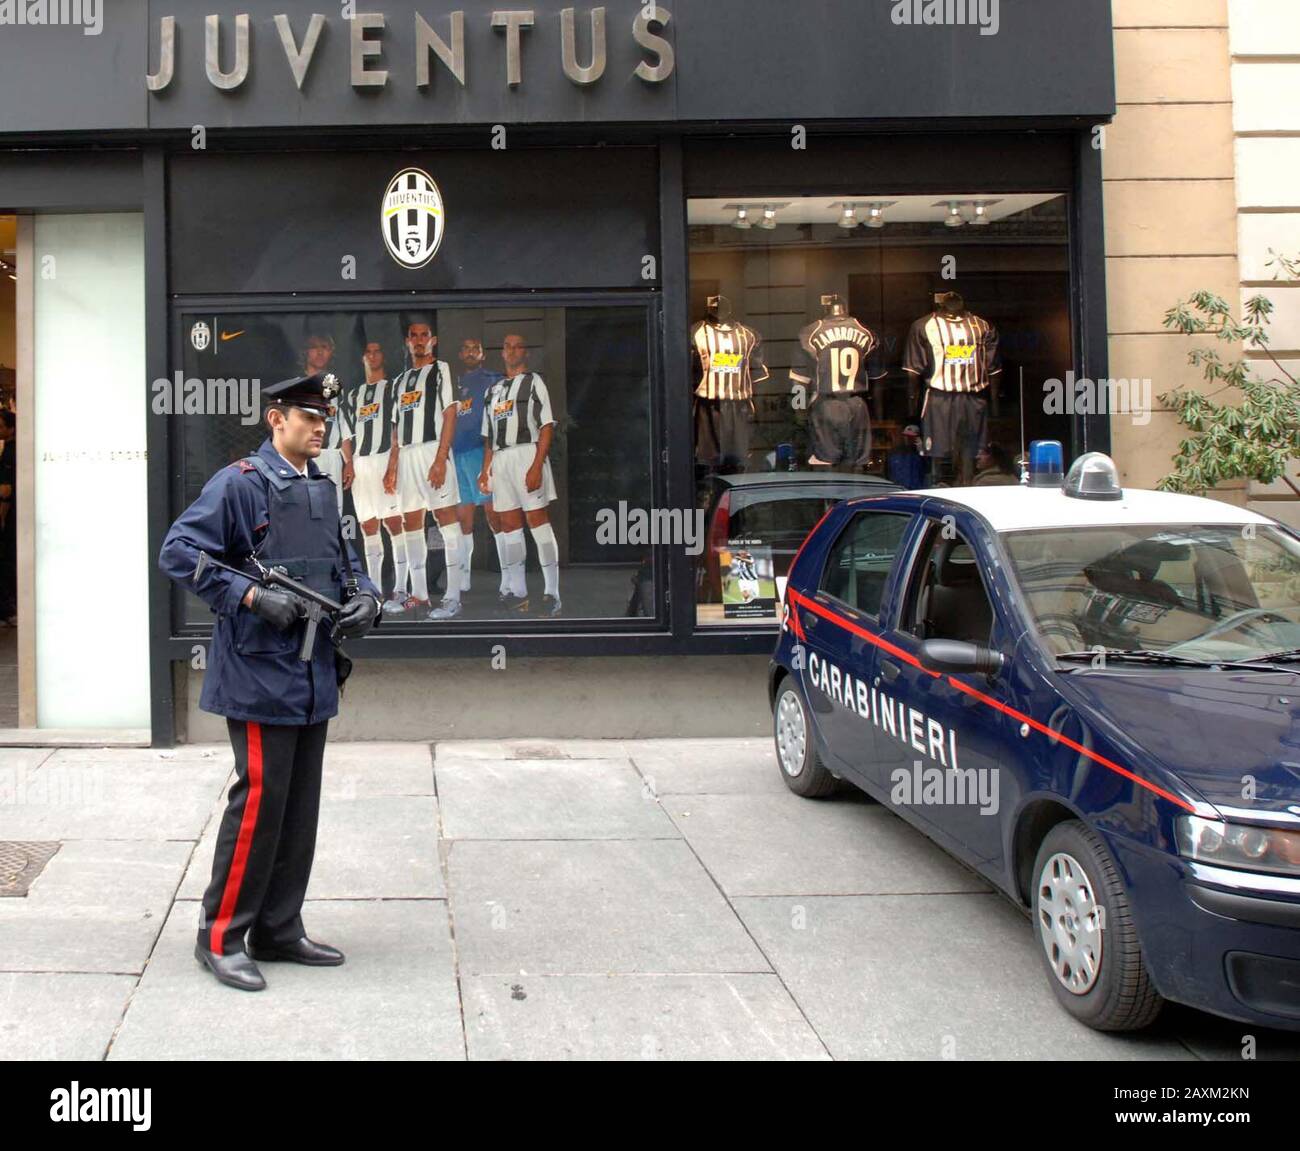 Gli appassionati di calcio della Juventus si scontrano con i tifosi e la polizia di Liverpool quando le due squadre si sono incontrate a Torino nel 2005. È stato il primo scontro dal disastro dello stadio Heysel nel 1985, quando 39 persone hanno perso la vita. Foto Stock